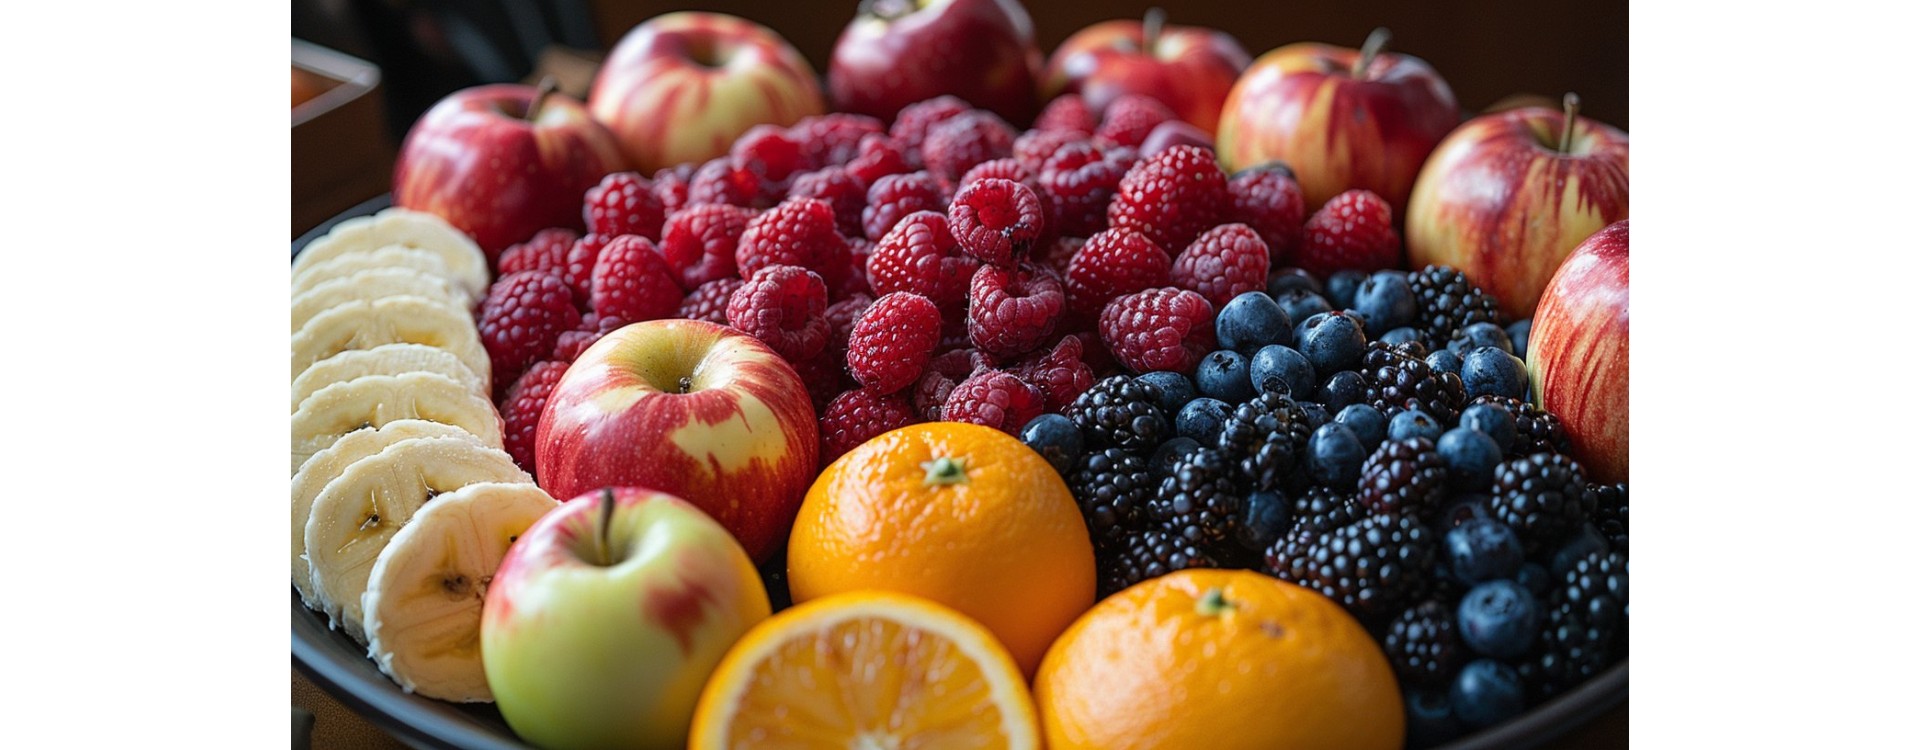 Les fruits qui facilitent la perte de poids